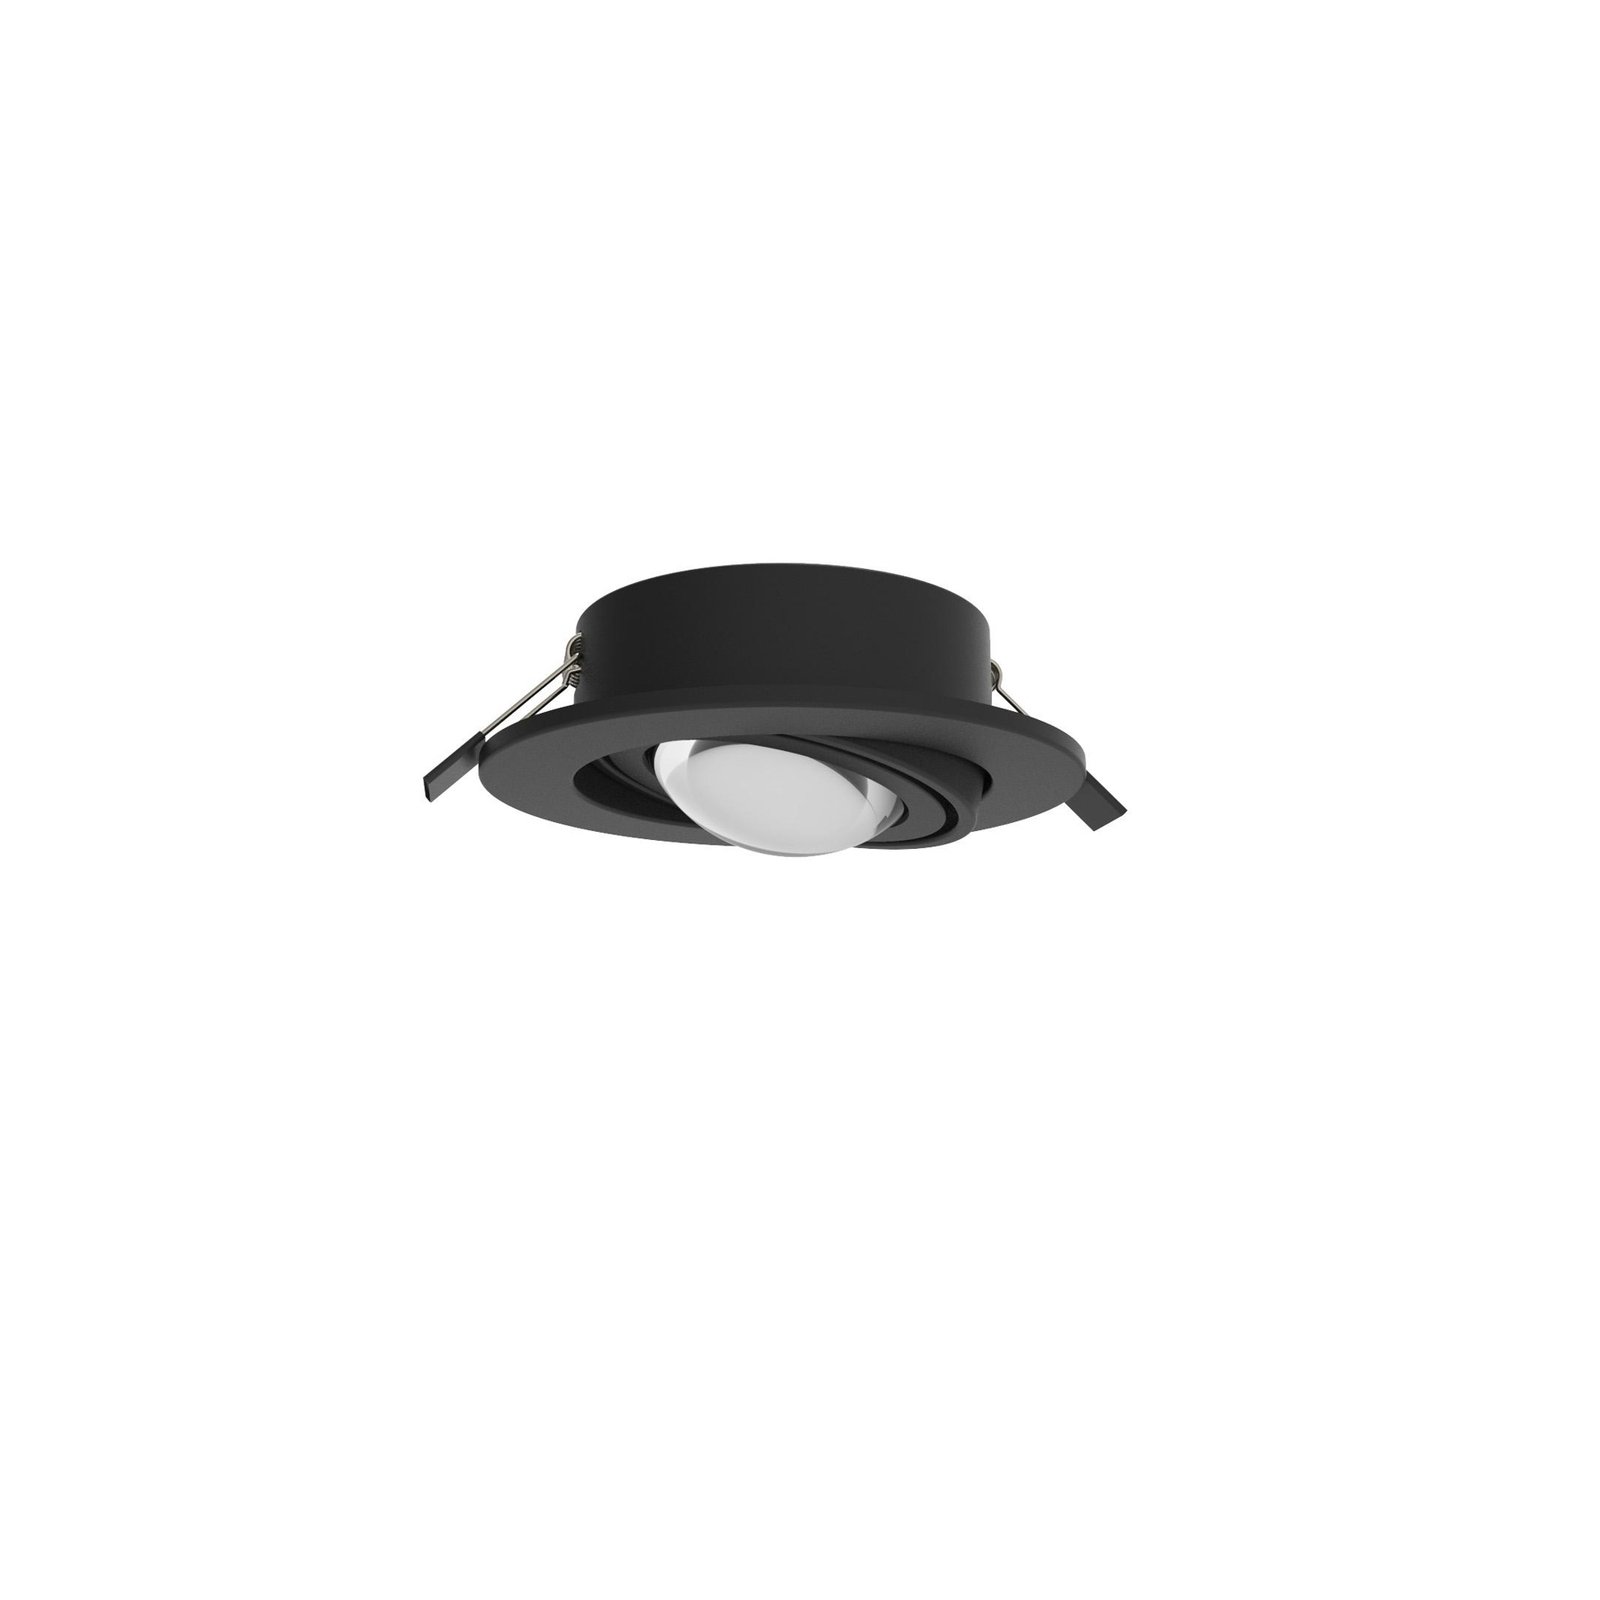 MEGATRON LED innfelt spotlight Planex Powerlens, 4,8 W, svart